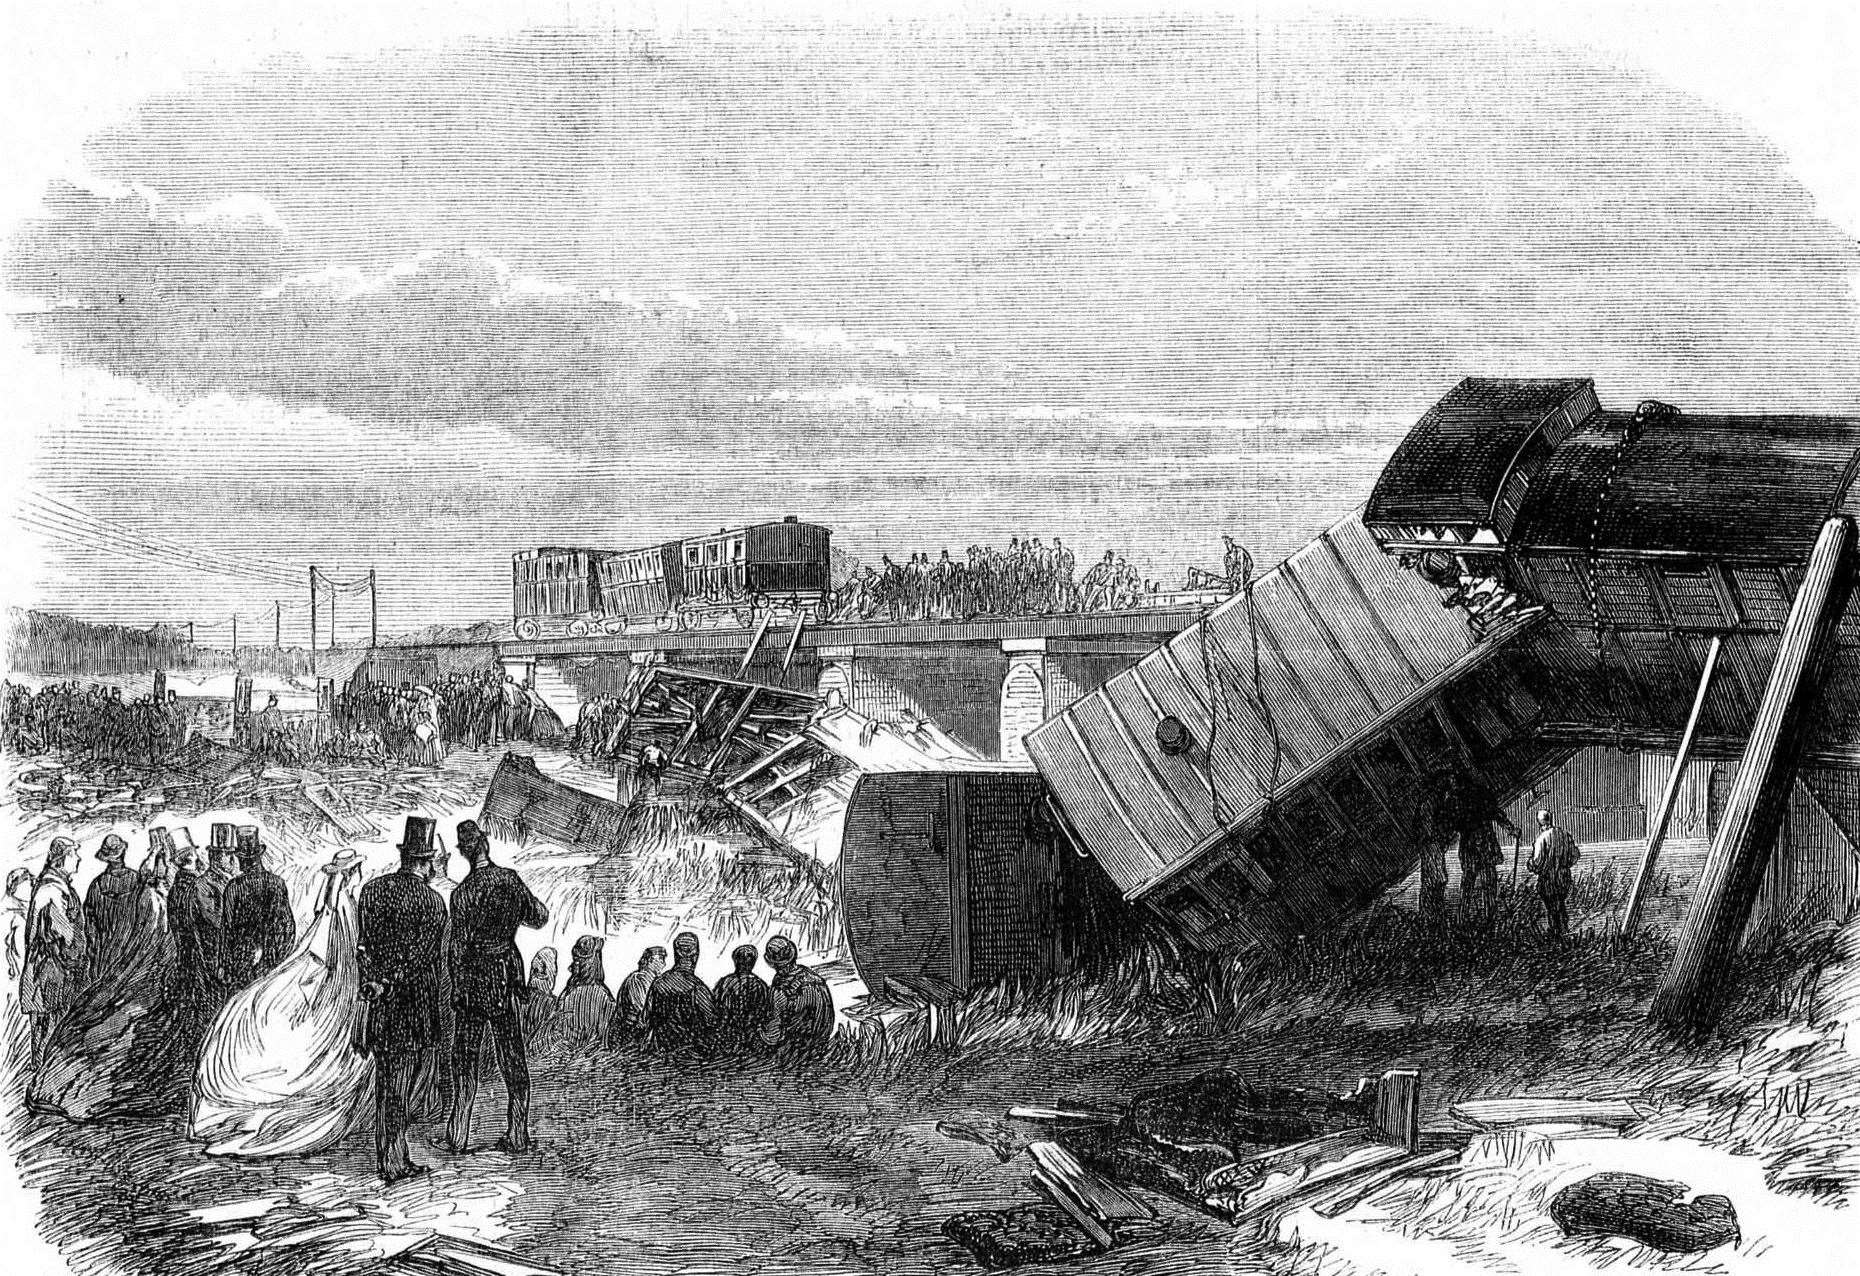 An illustration of the scene of the Staplehurst railway crash